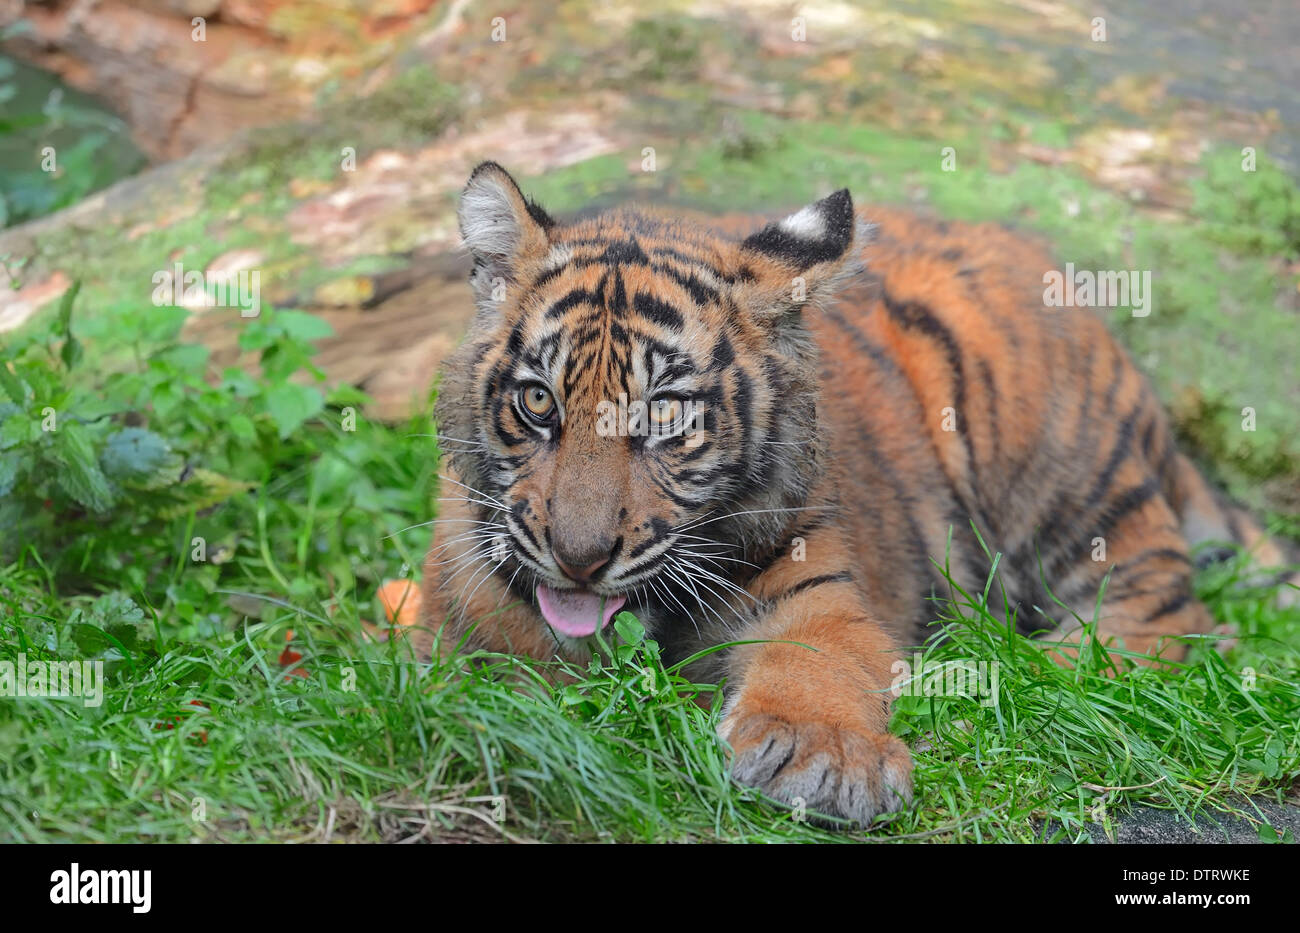 Young Sumatran Tiger / (Panthera tigris sumatrae, Panthera sumatrae) Stock Photo